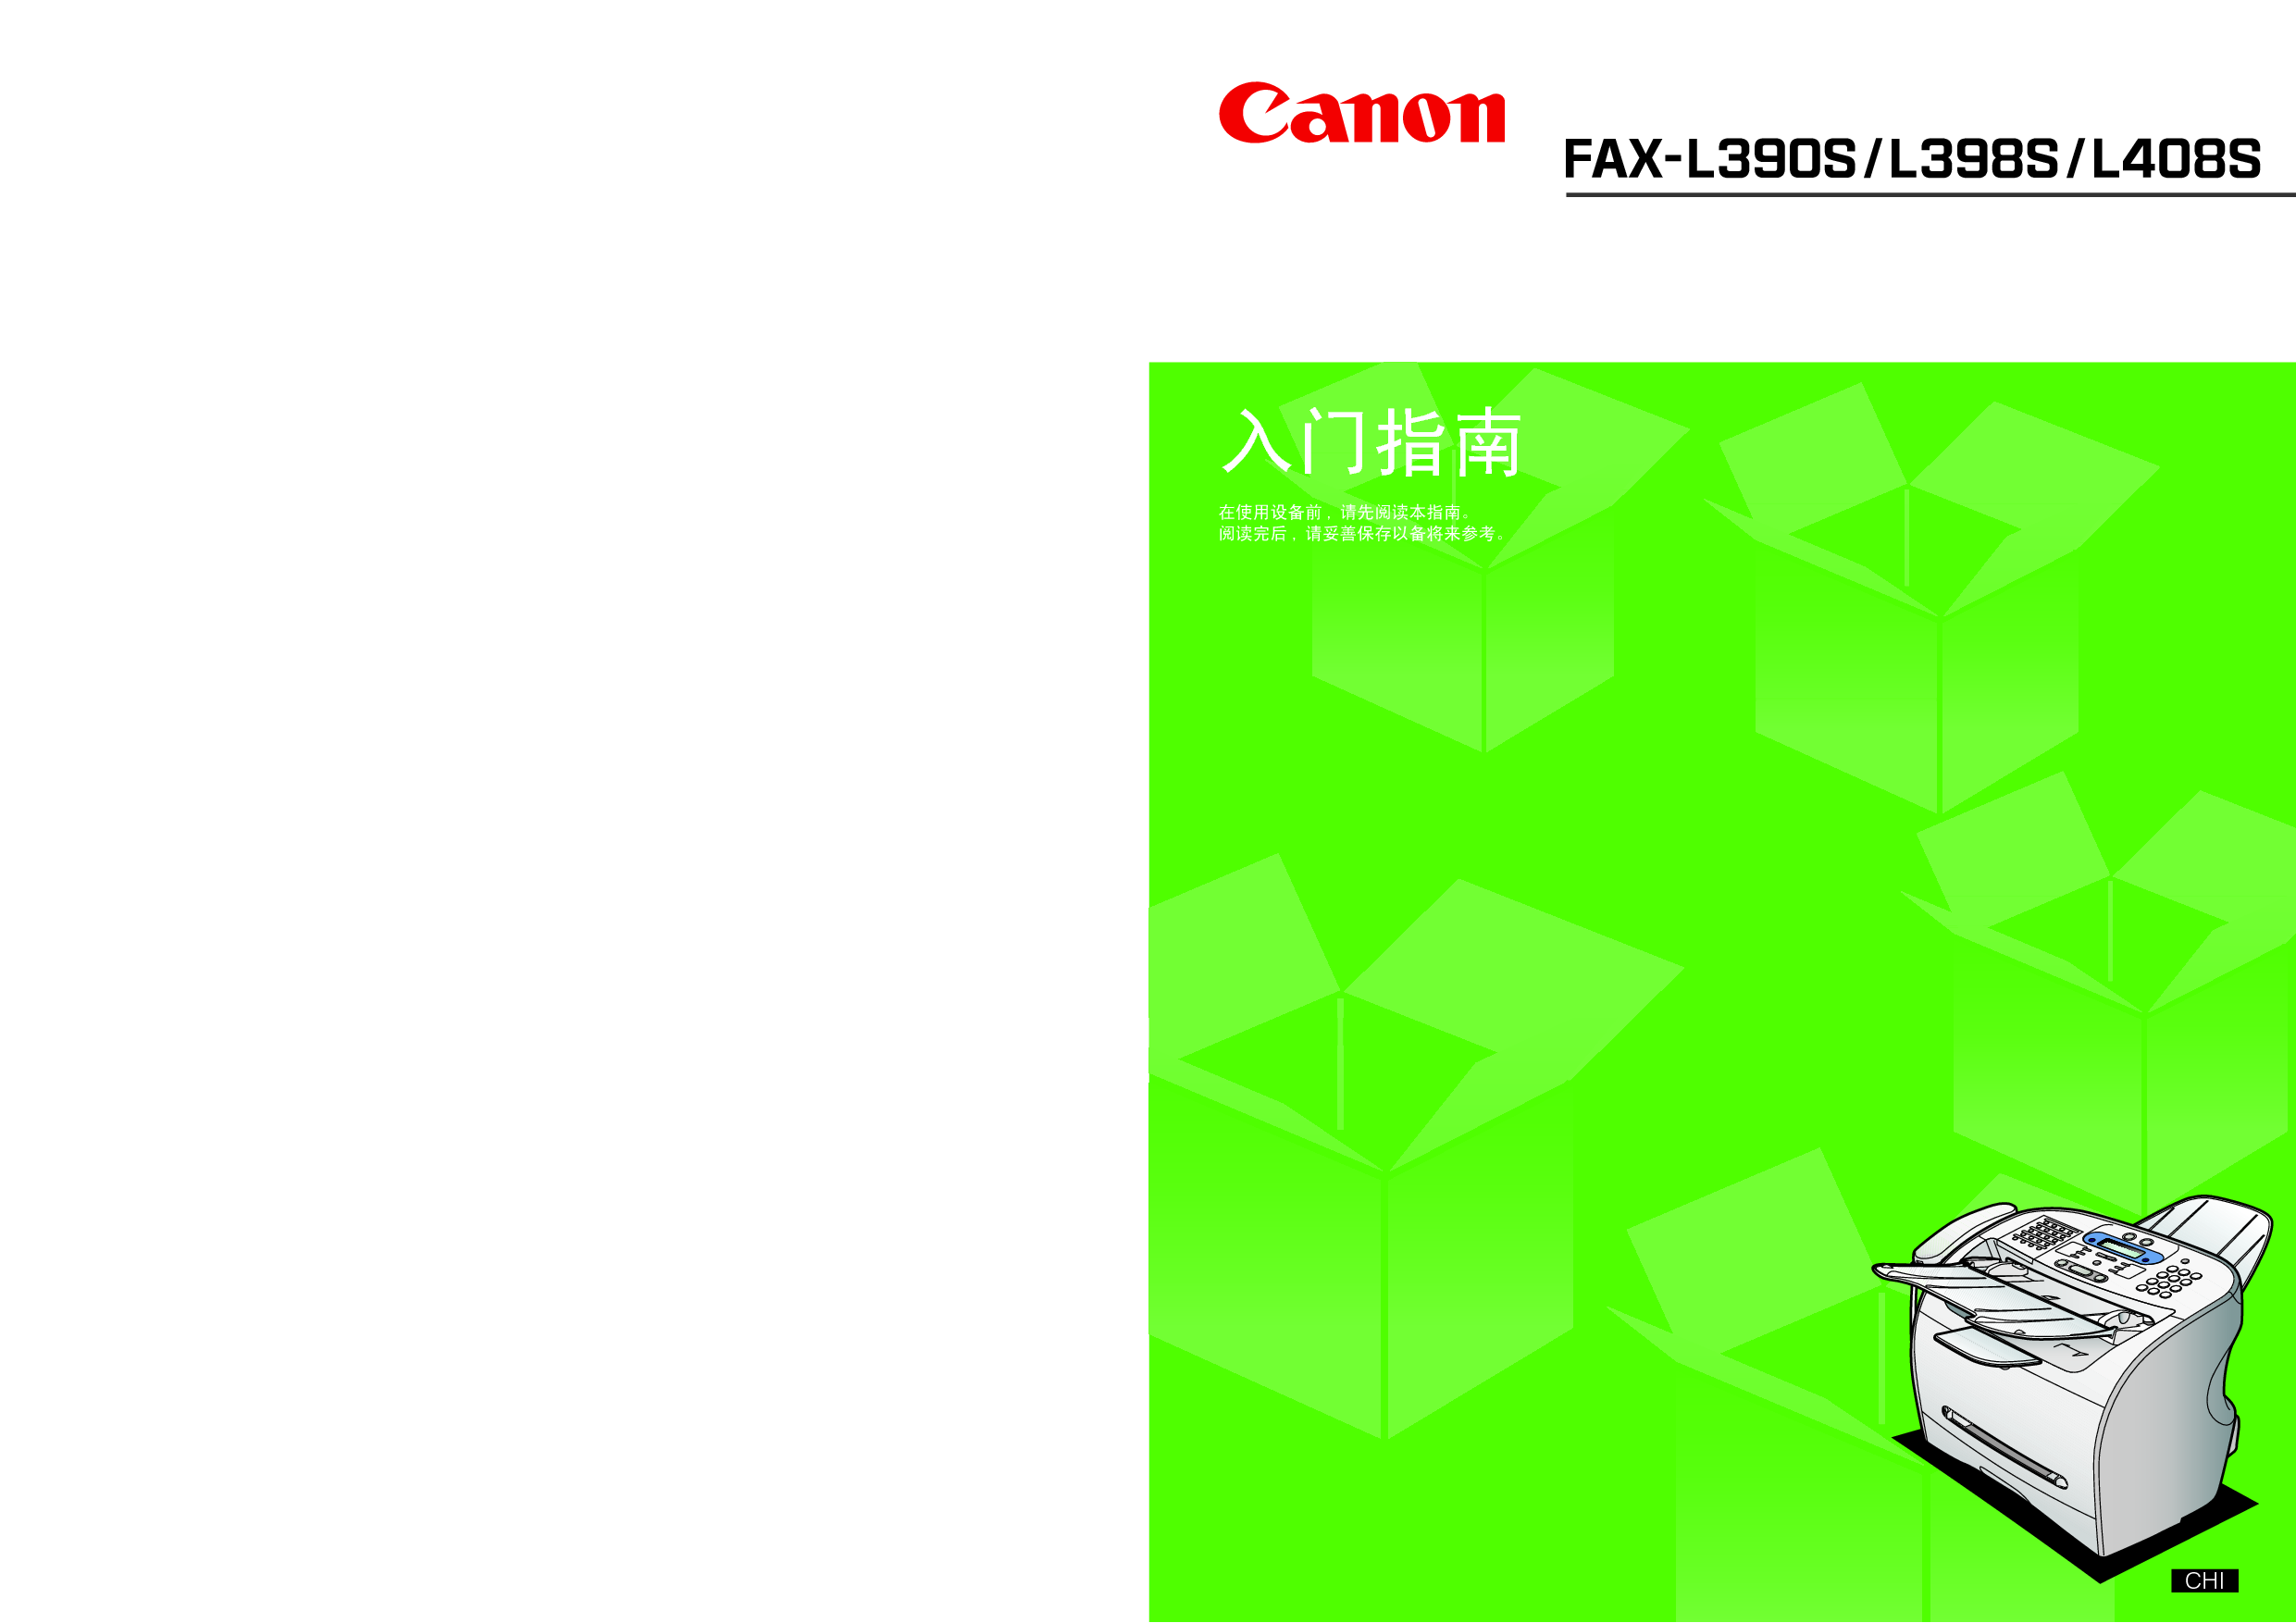 佳能 Canon FAX-L390S 入门指南 封面